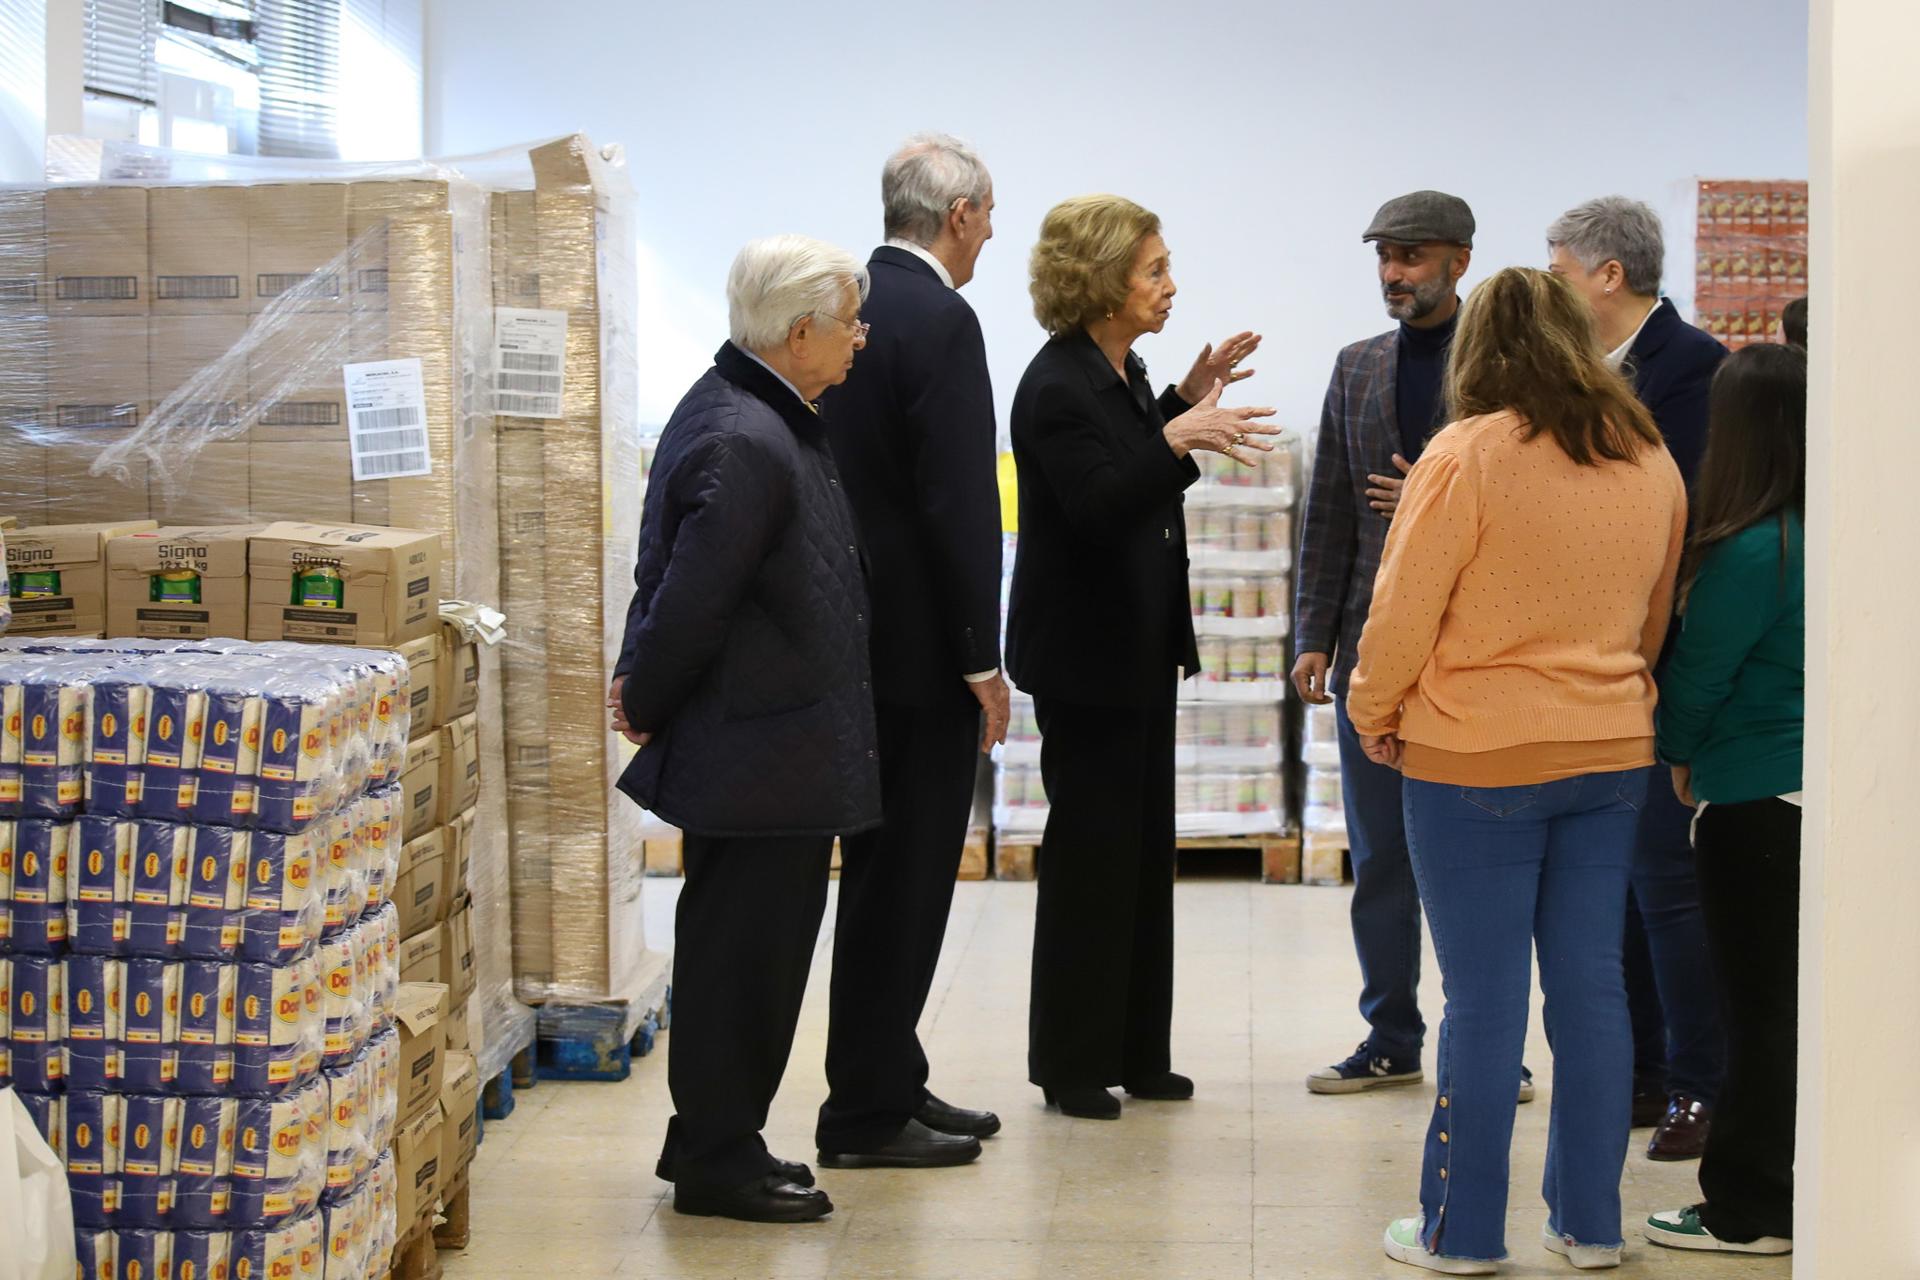 La Reina Sofía ha visitado el Banco de Alimentos de Los Llanos de Aridane, que ha atendido a más de 5.000 familias tras la erupción en La Palma gracias a las donaciones de particulares y asociaciones como la Fundación Reina Sofía.EFE/ Luis G Morera